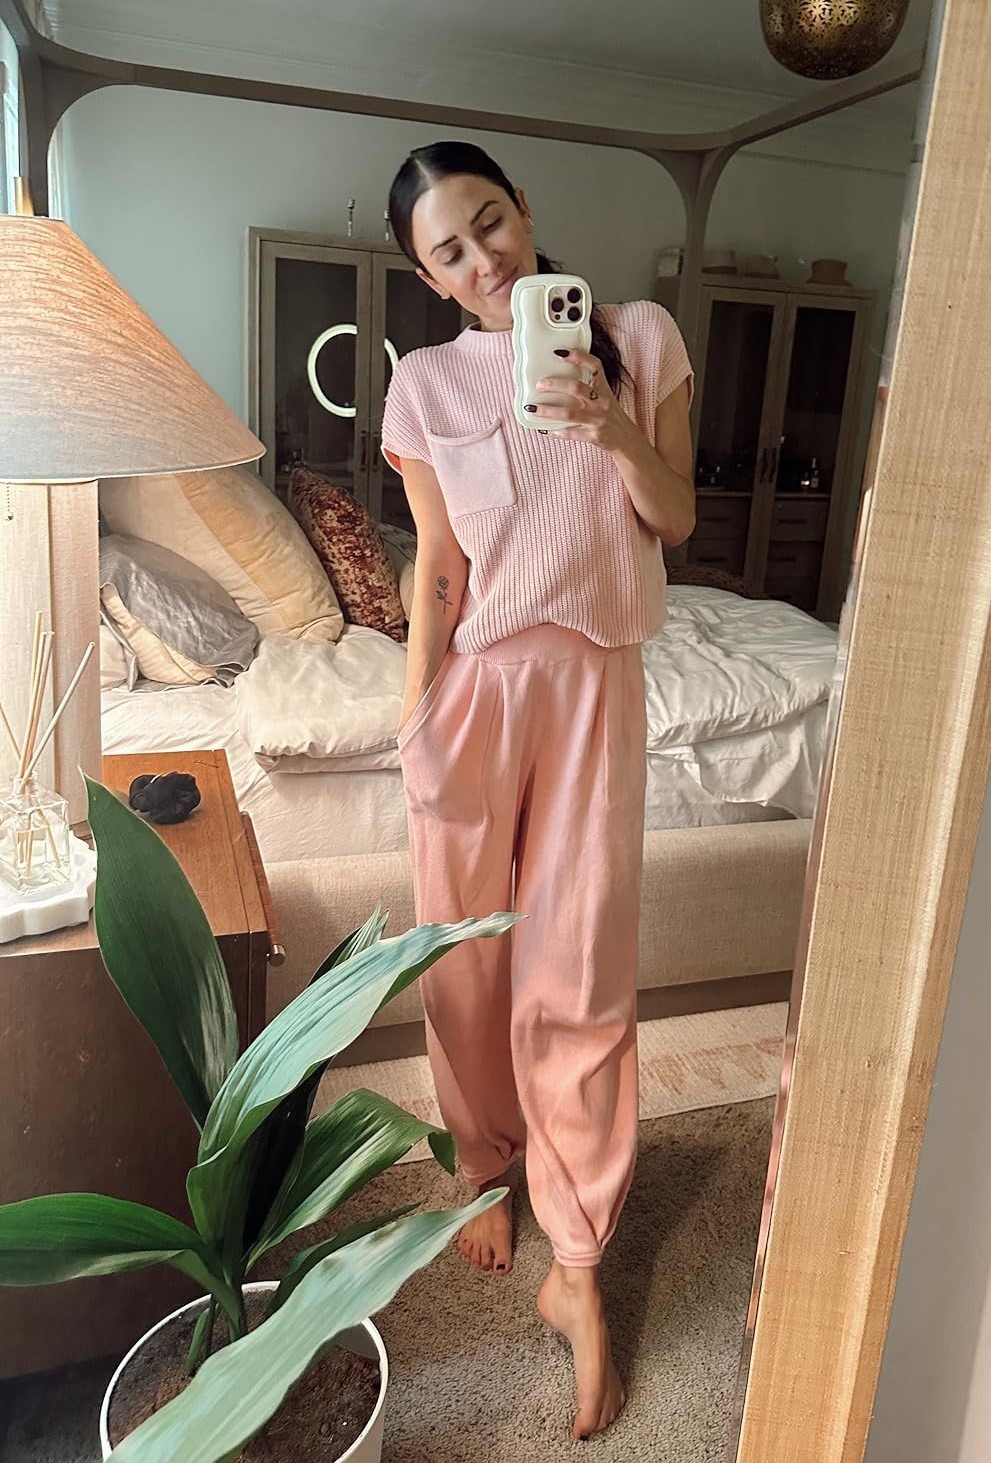 Kaitlyn Bristowe - Instagram story | Gwen Stefani style